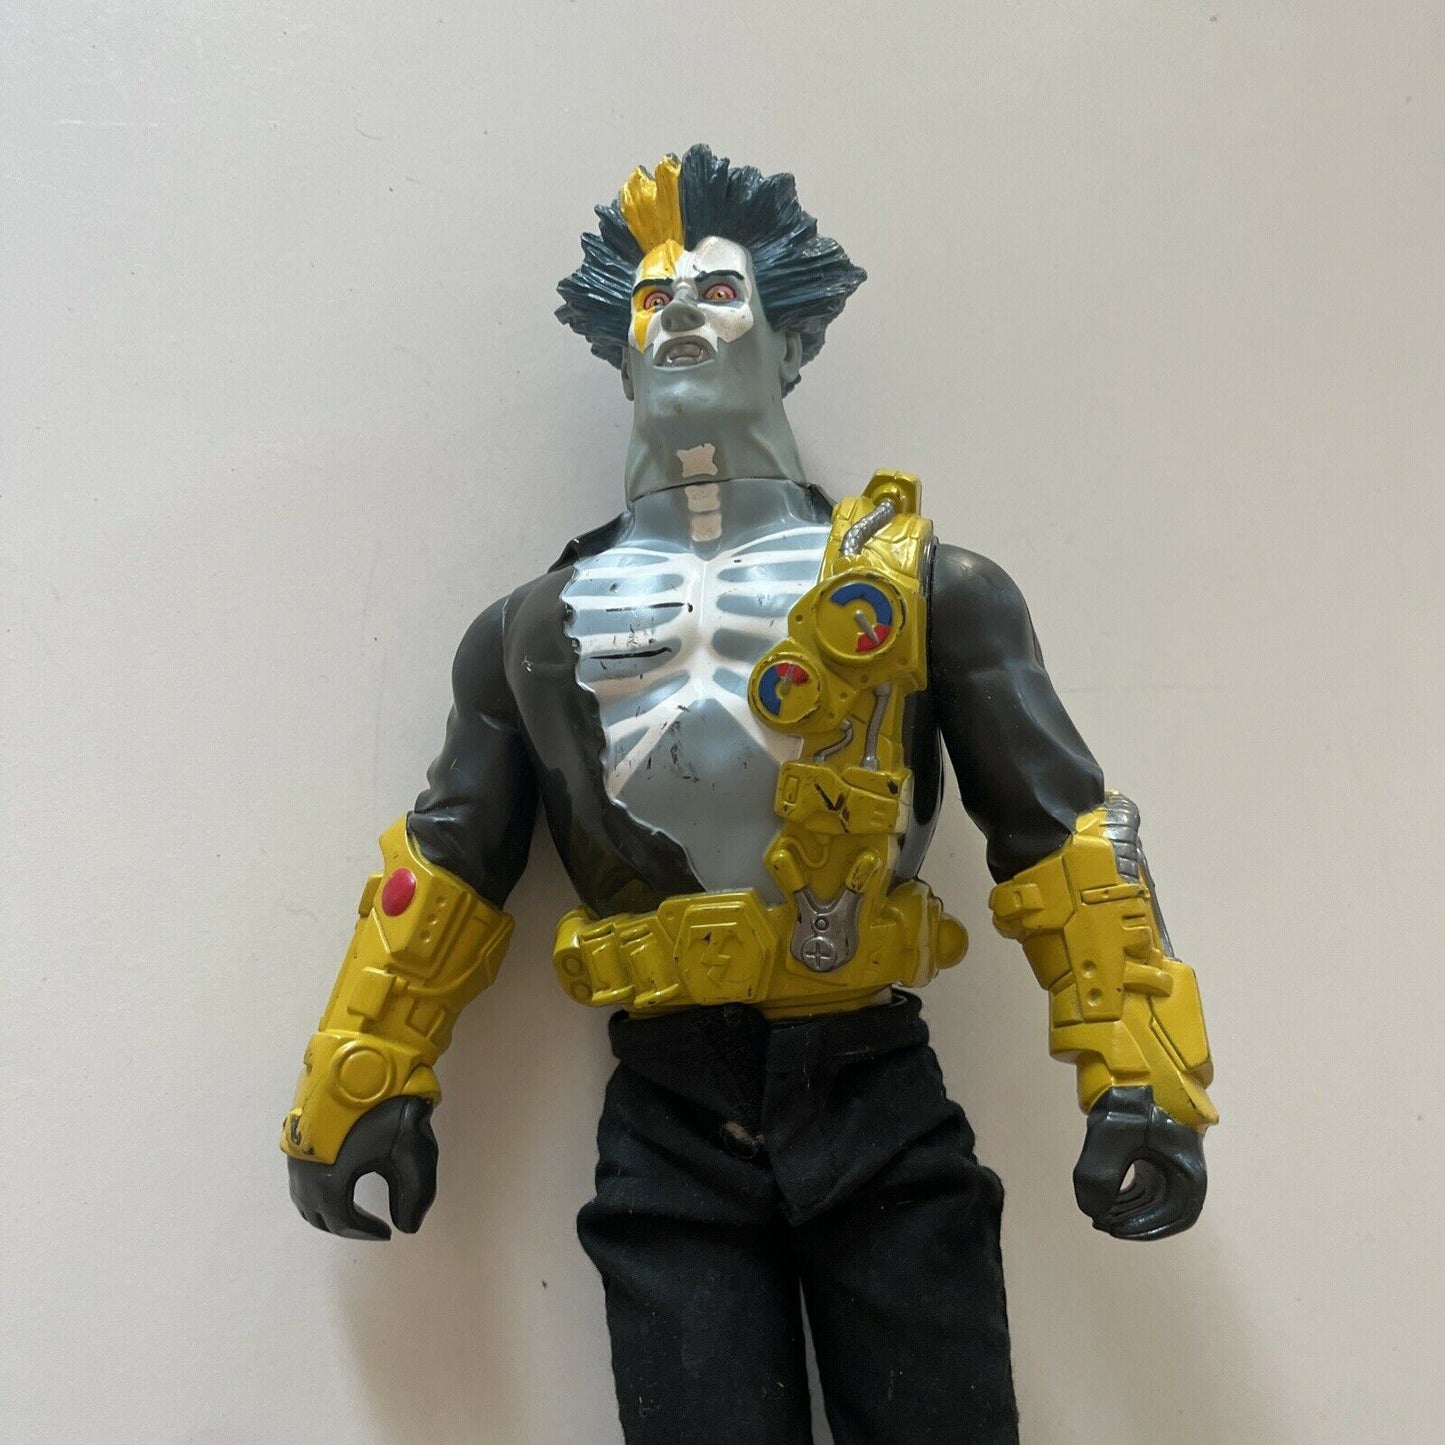 ACTION MAN Villain Tempest 2001 Hasbro 33cm Electro Yellow Blue Action Figure